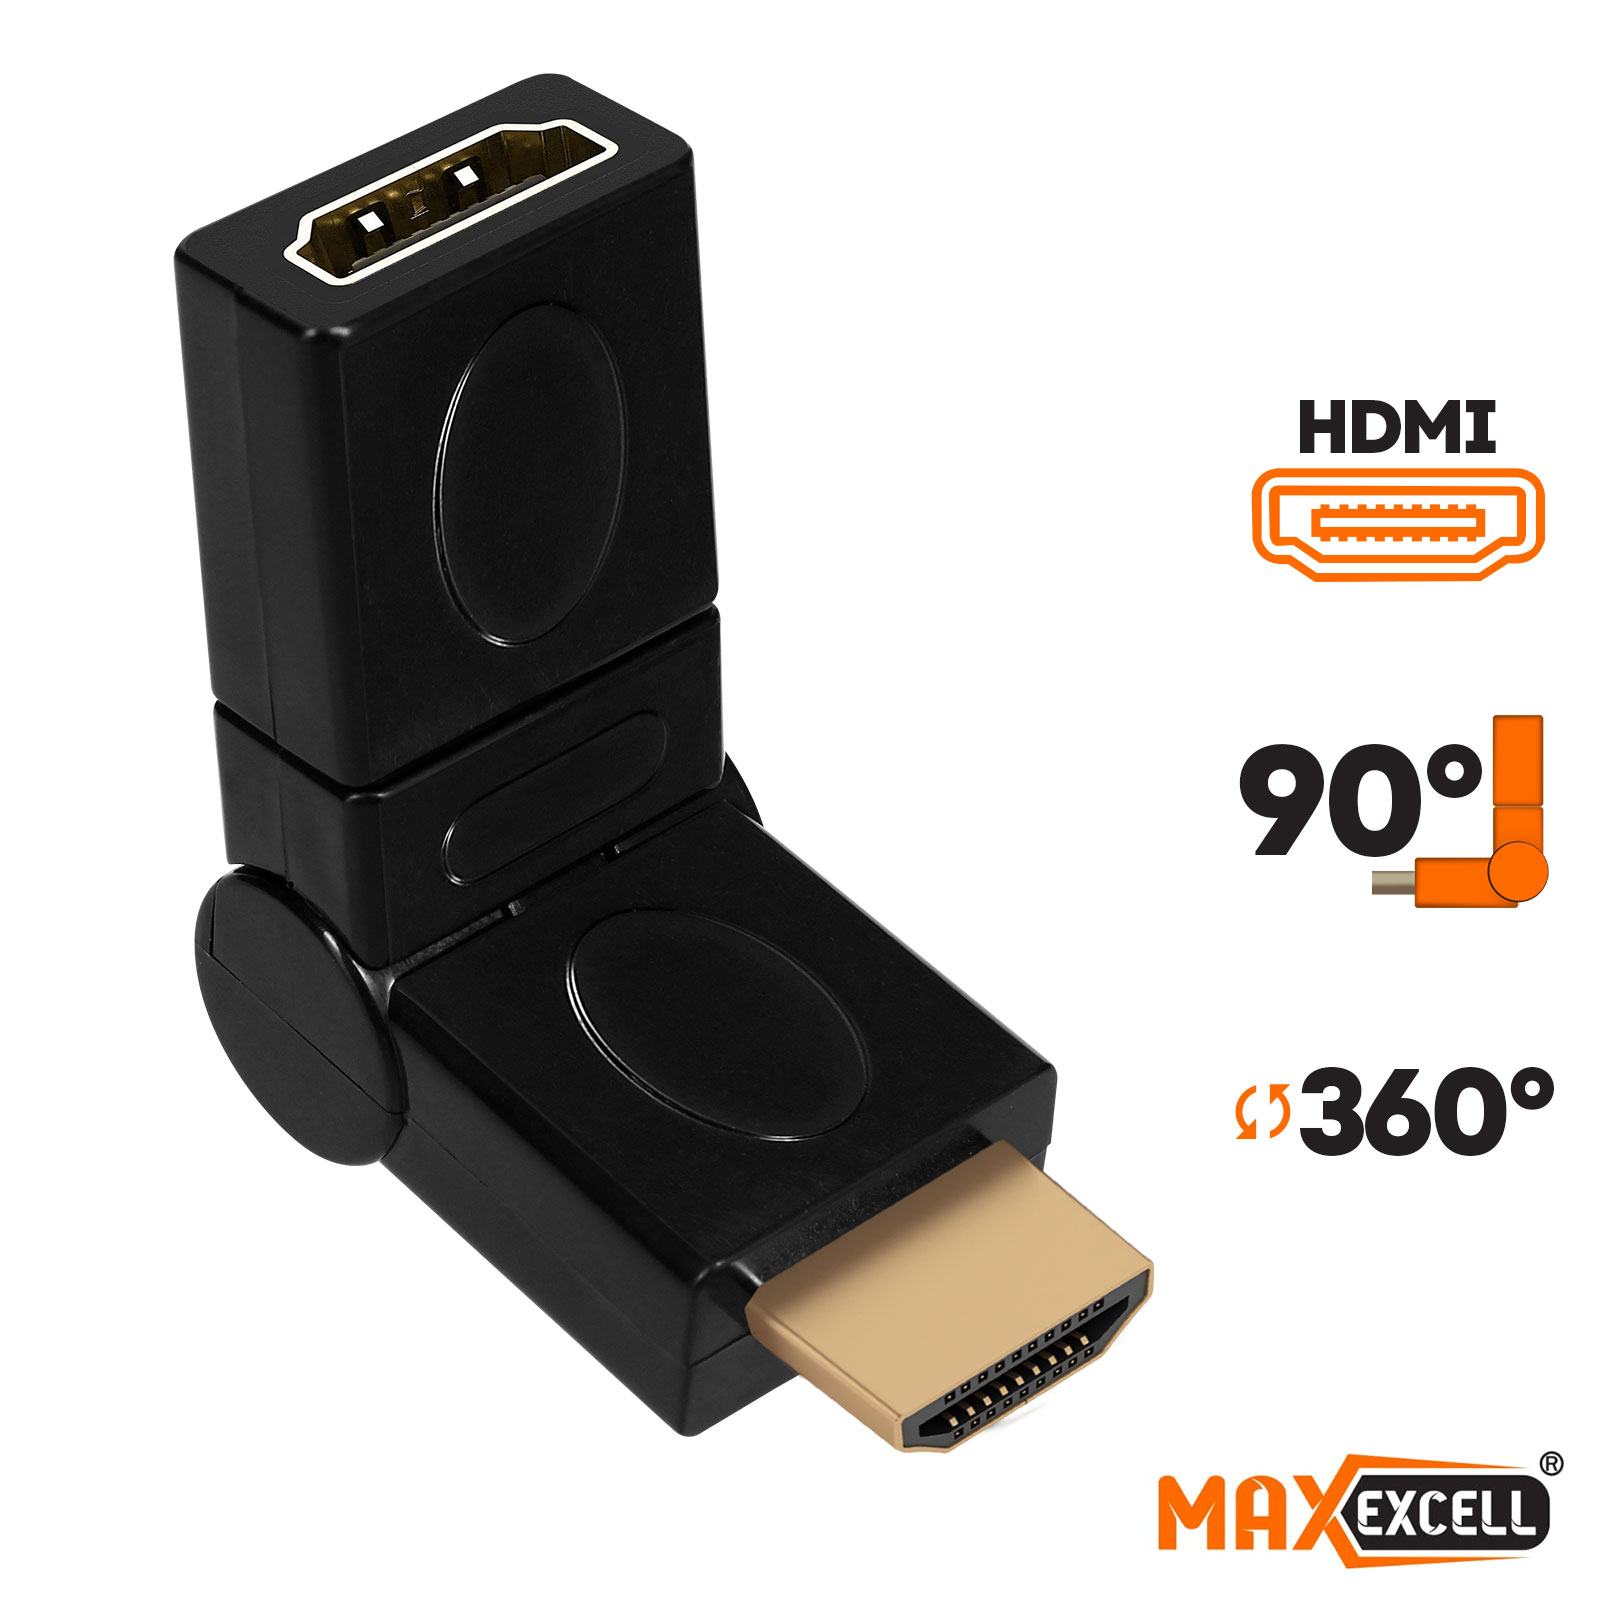 Adaptateur HDMI Mâle vers HDMI Femelle, Coudé et Rotatif 360°, Max excell -  Noir - Français